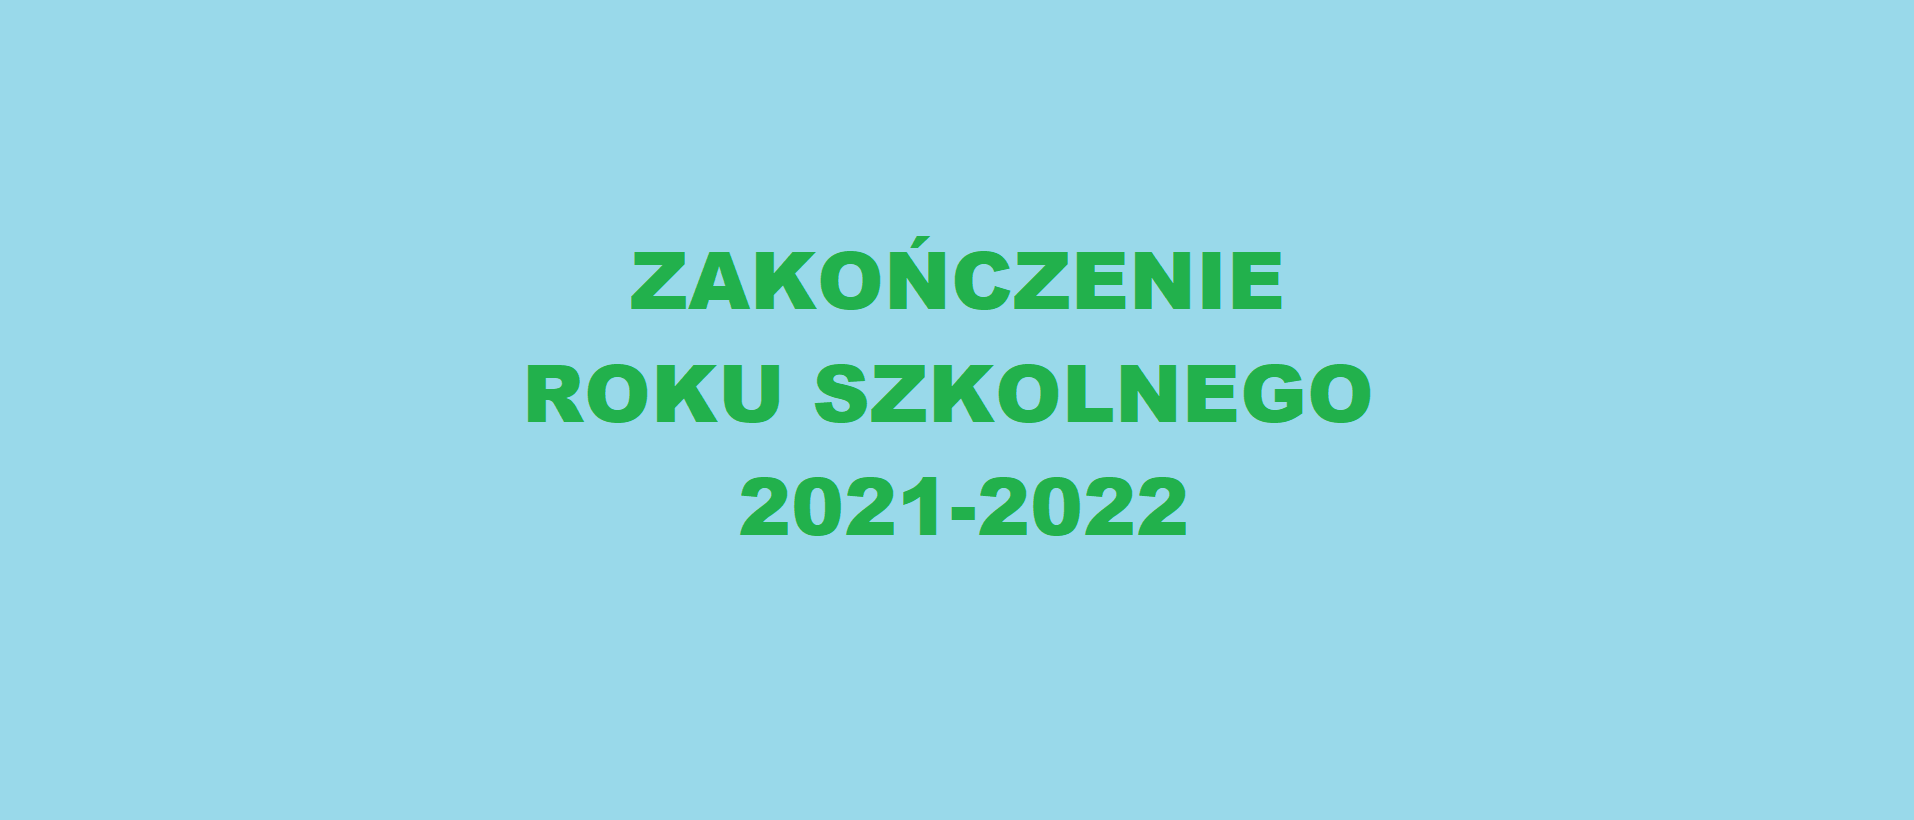 Zakończenie roku szkolnego 2021-2022